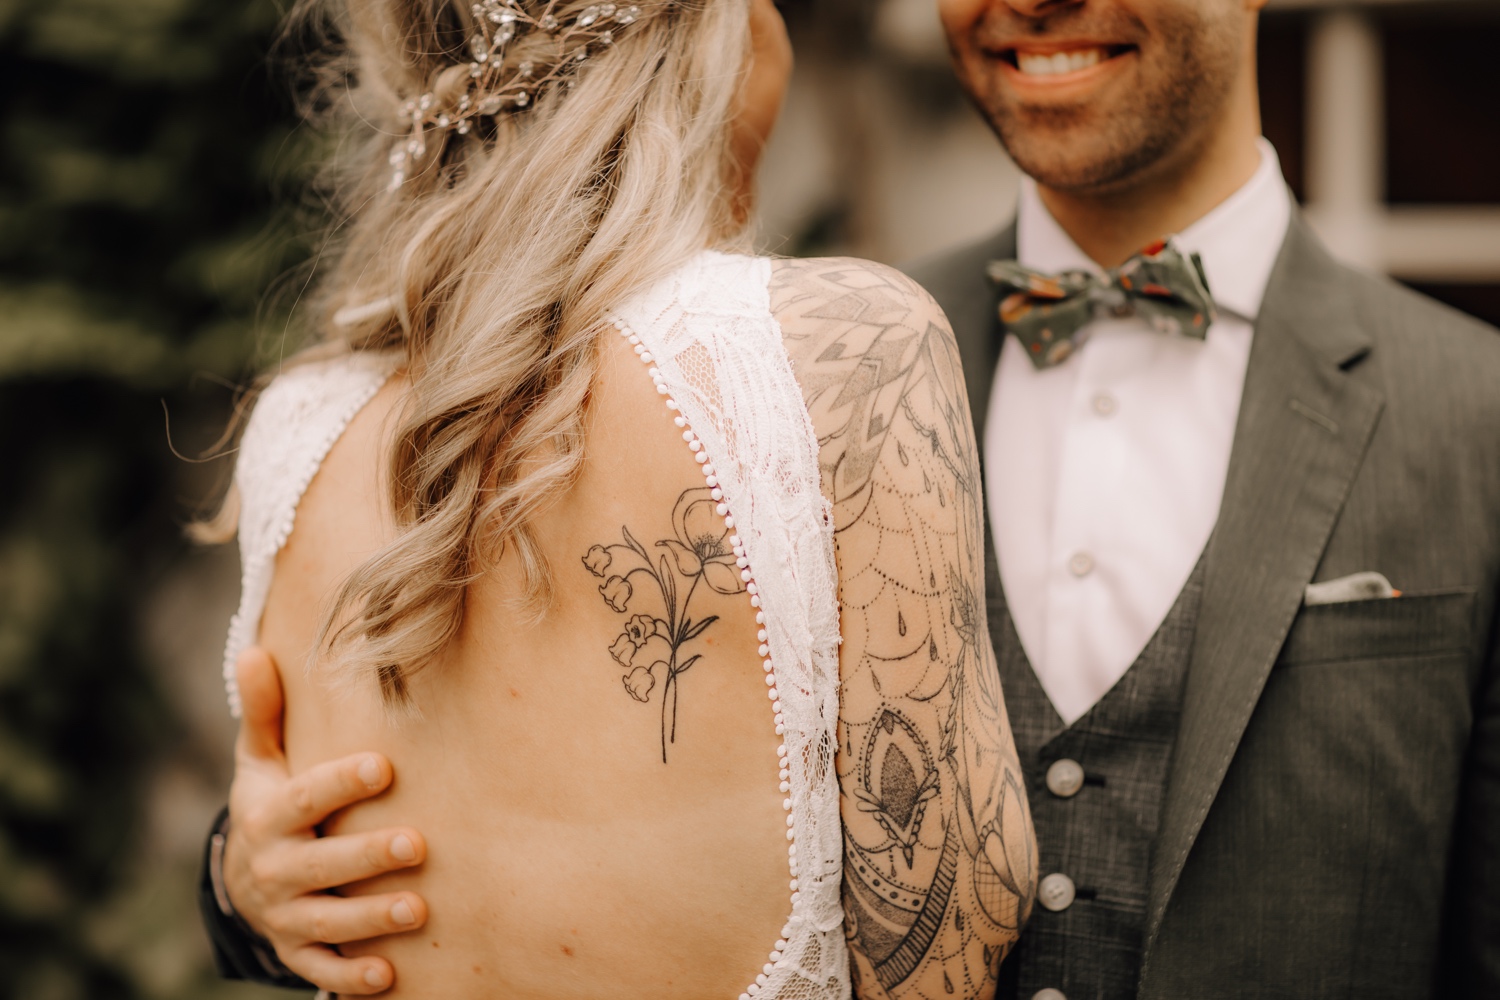 alternatief bruidspaar toont betekenisvolle tattoo tijdens fotoshoot op huwelijksdag